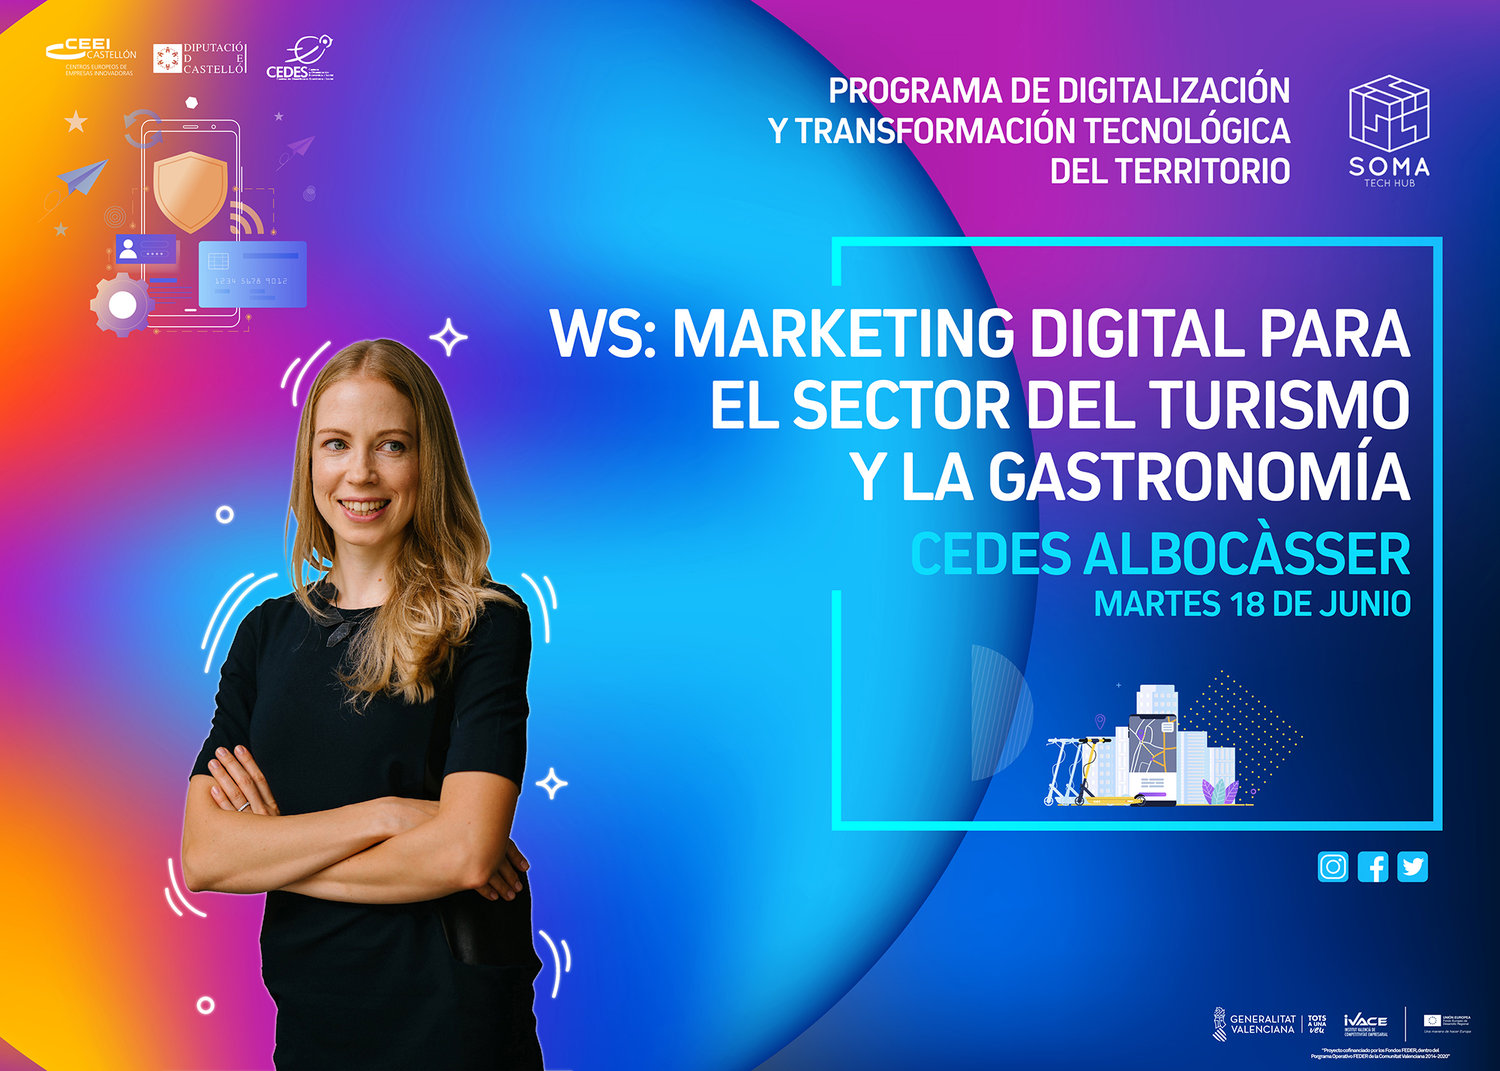 WS: Marketing digital para el sector del turismo y la gastronoma. Albocsser